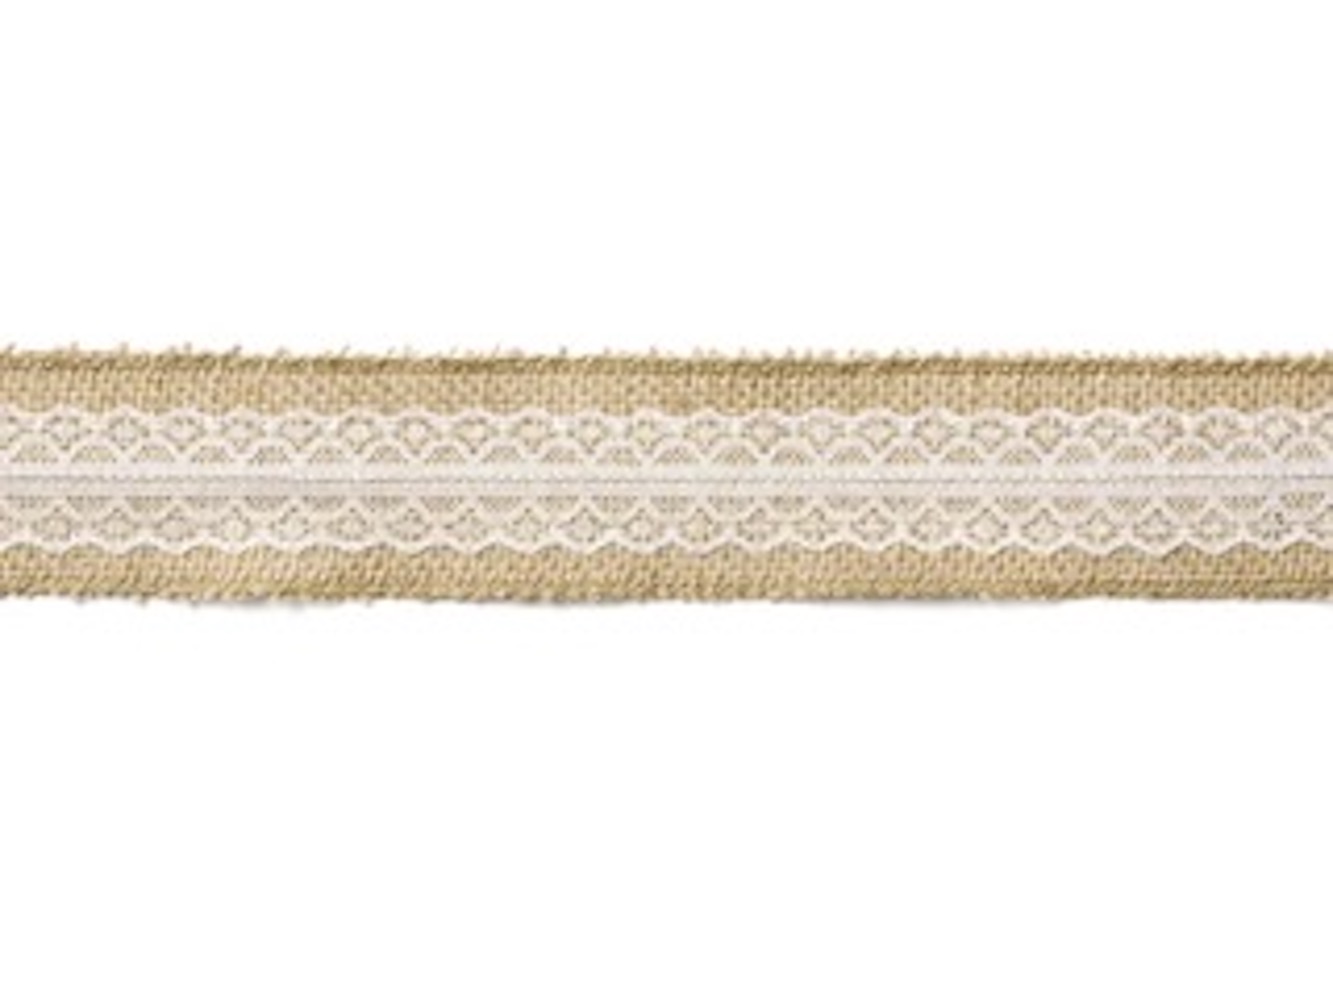 Juteband mit weißer Spitze in der Mitte breit, Breite ca. 5 cm, Länge ca. 5 m